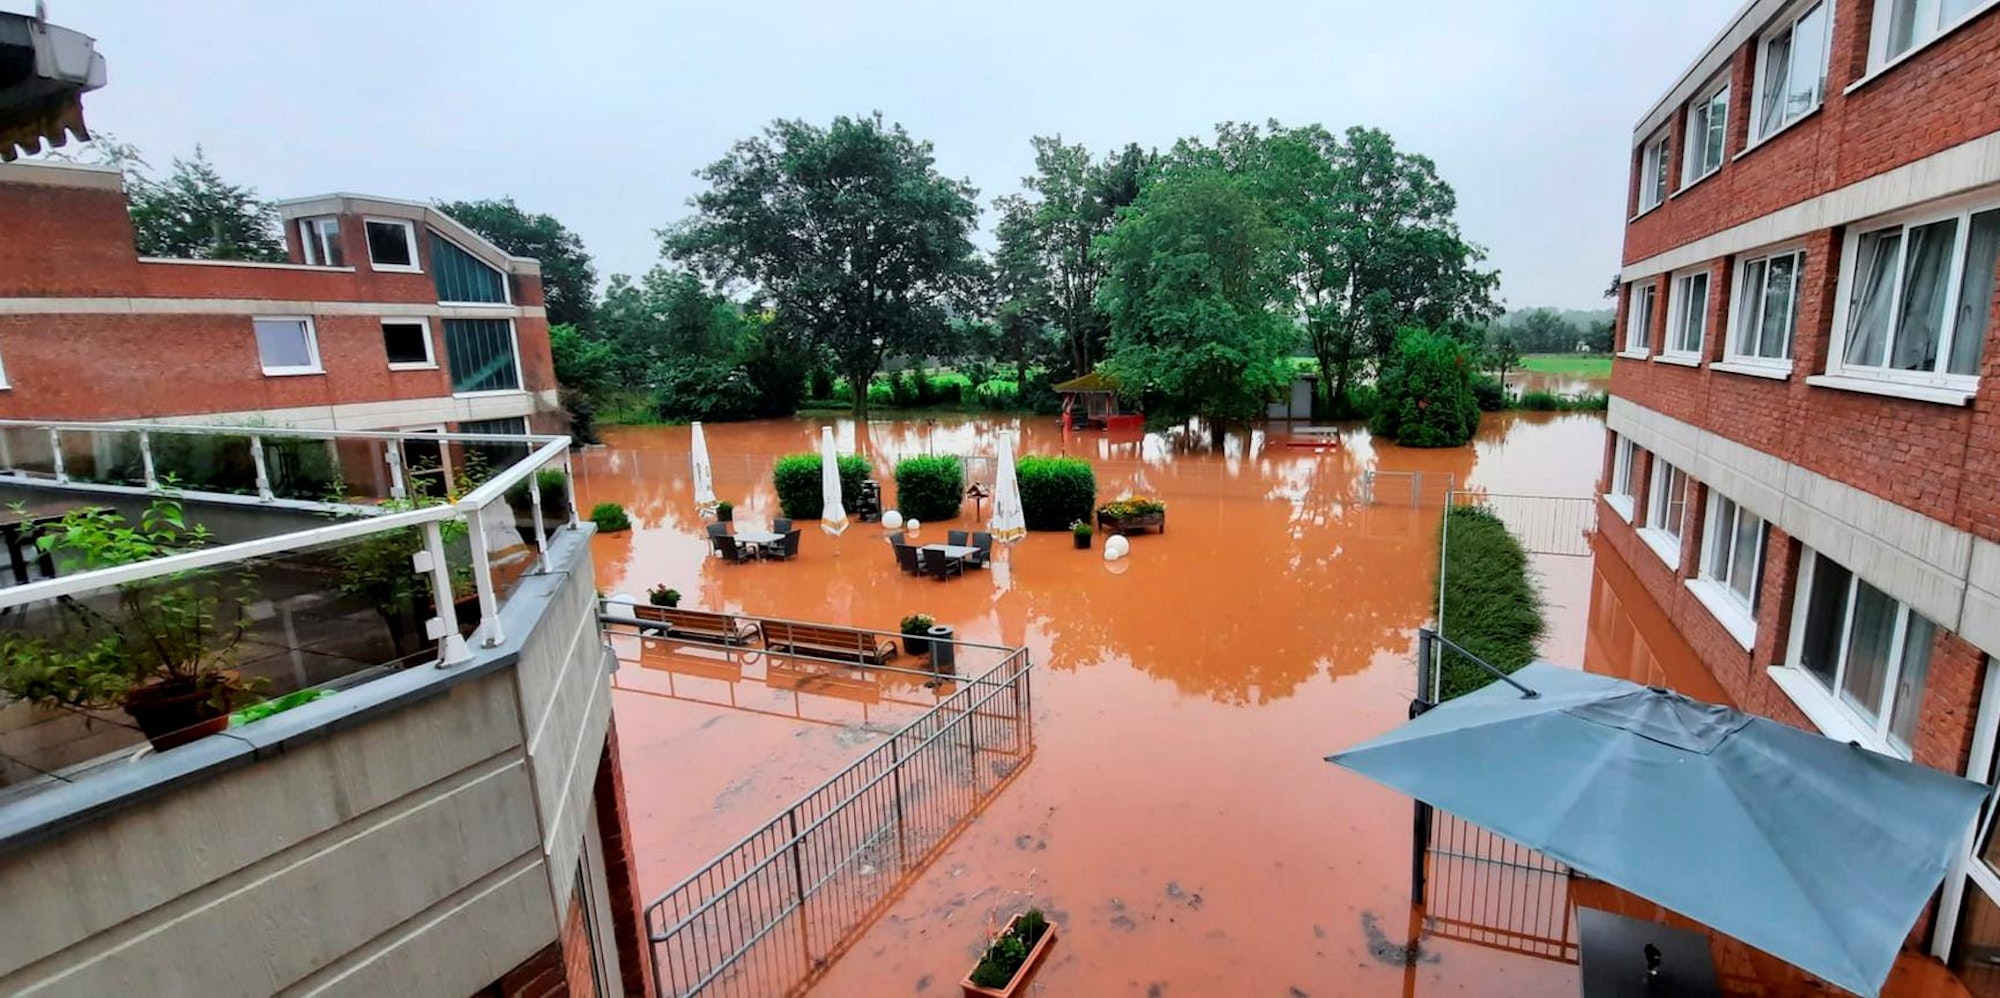 Der Garten des Awo-Seniorenzentrums stand komplett unter Wasser.